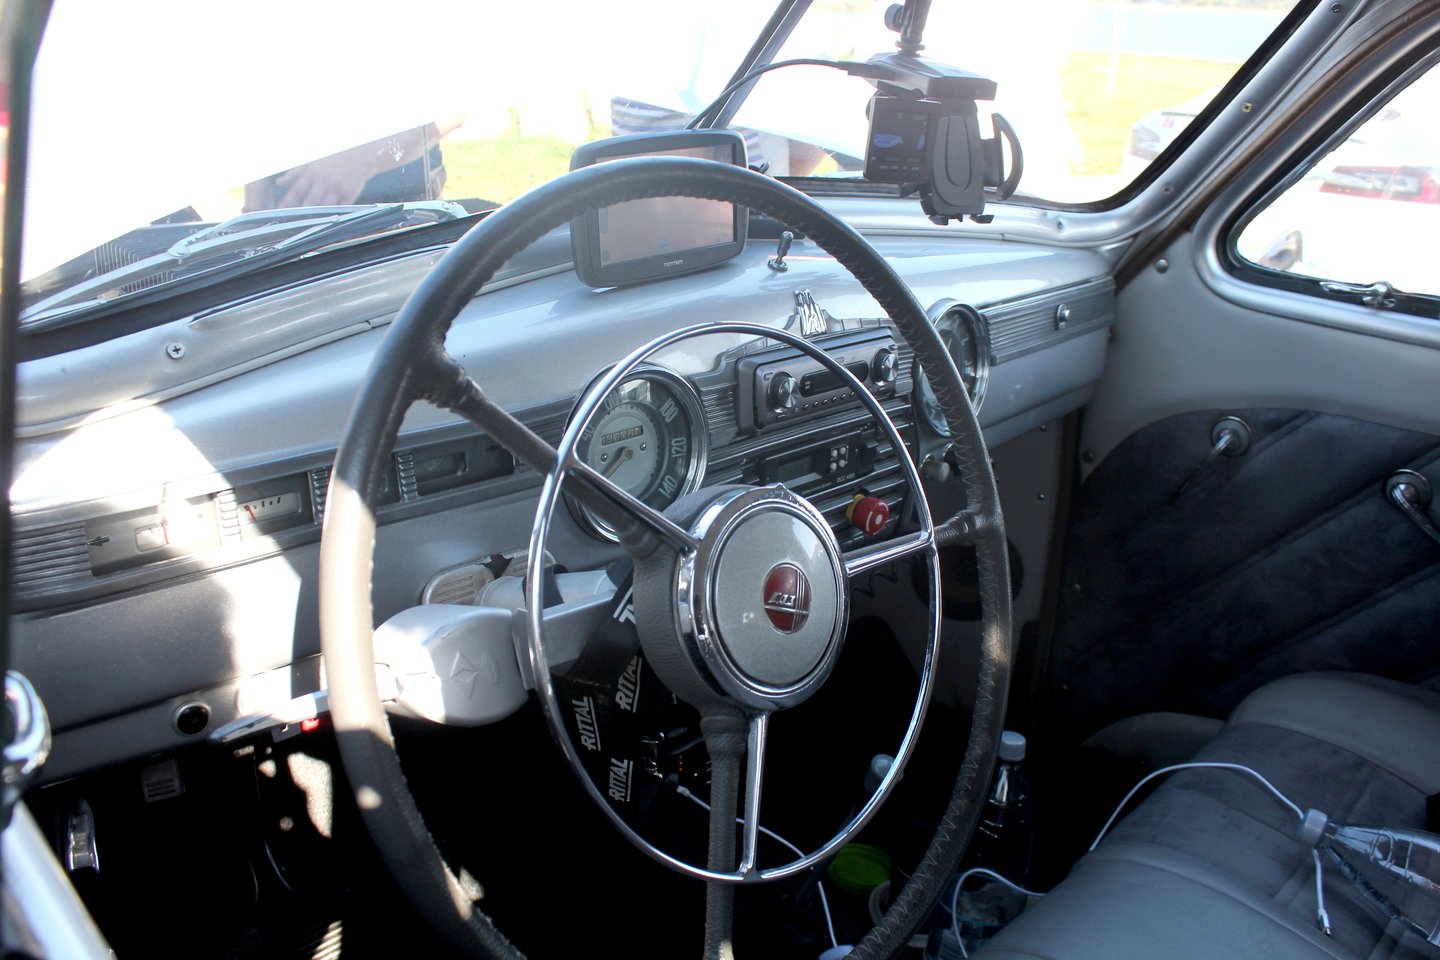 Seno sovietinio automobilio „Pobieda“pavertimas moderniu elektromobiliu estui M.Merilo kainavo 25 tūkstančius eurų.<br> R.Vitkaus nuotr.